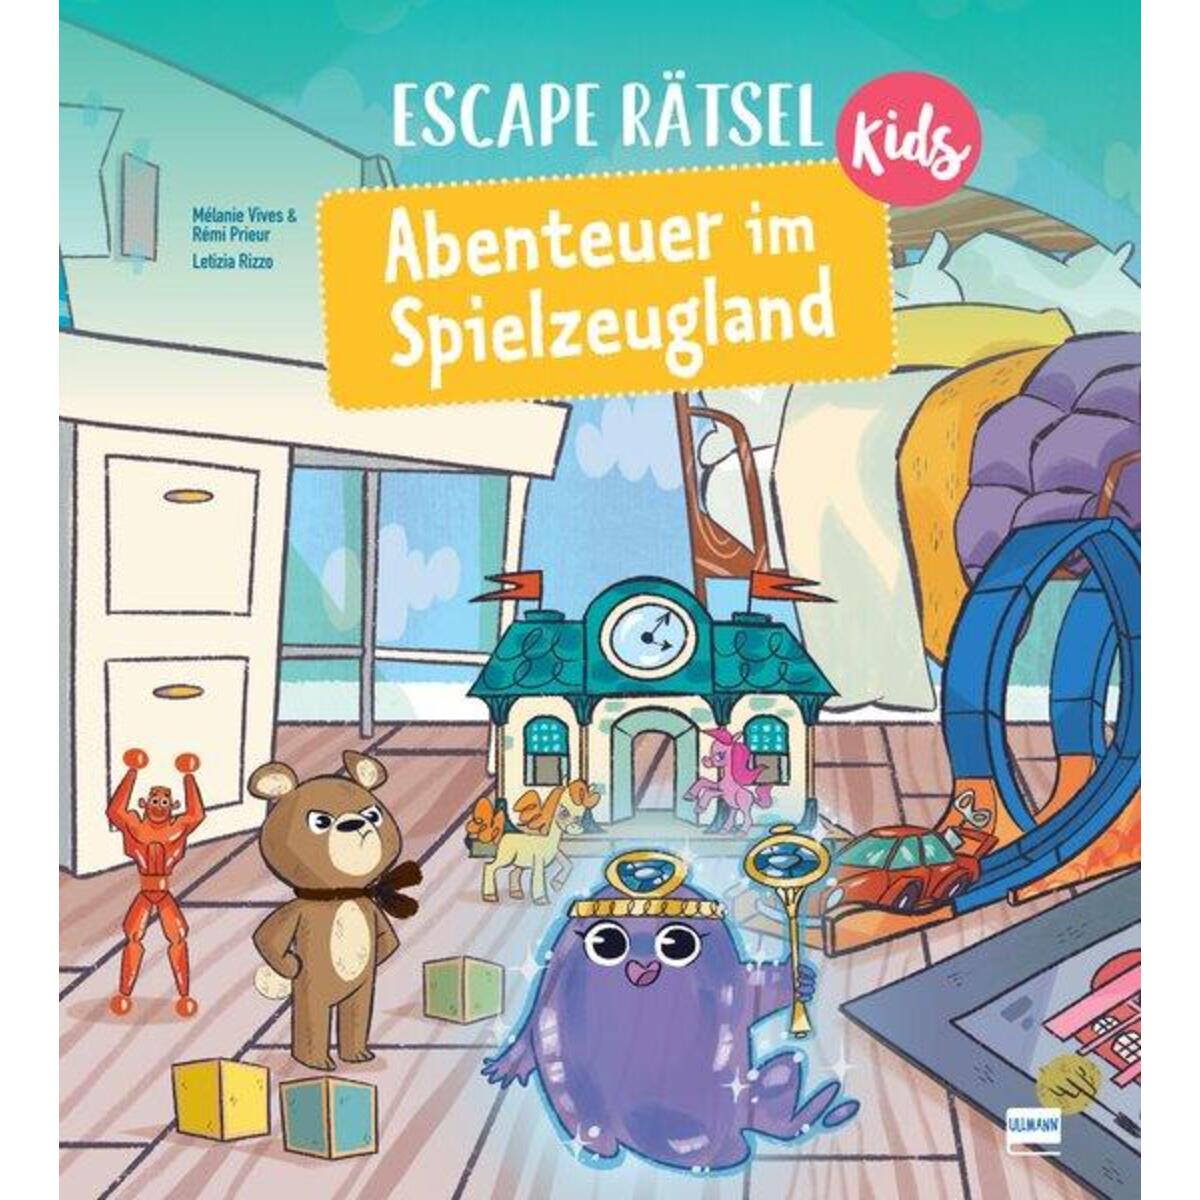 Escape Rätsel Kids - Abenteuer im Spielzeugland von Ullmann Medien GmbH